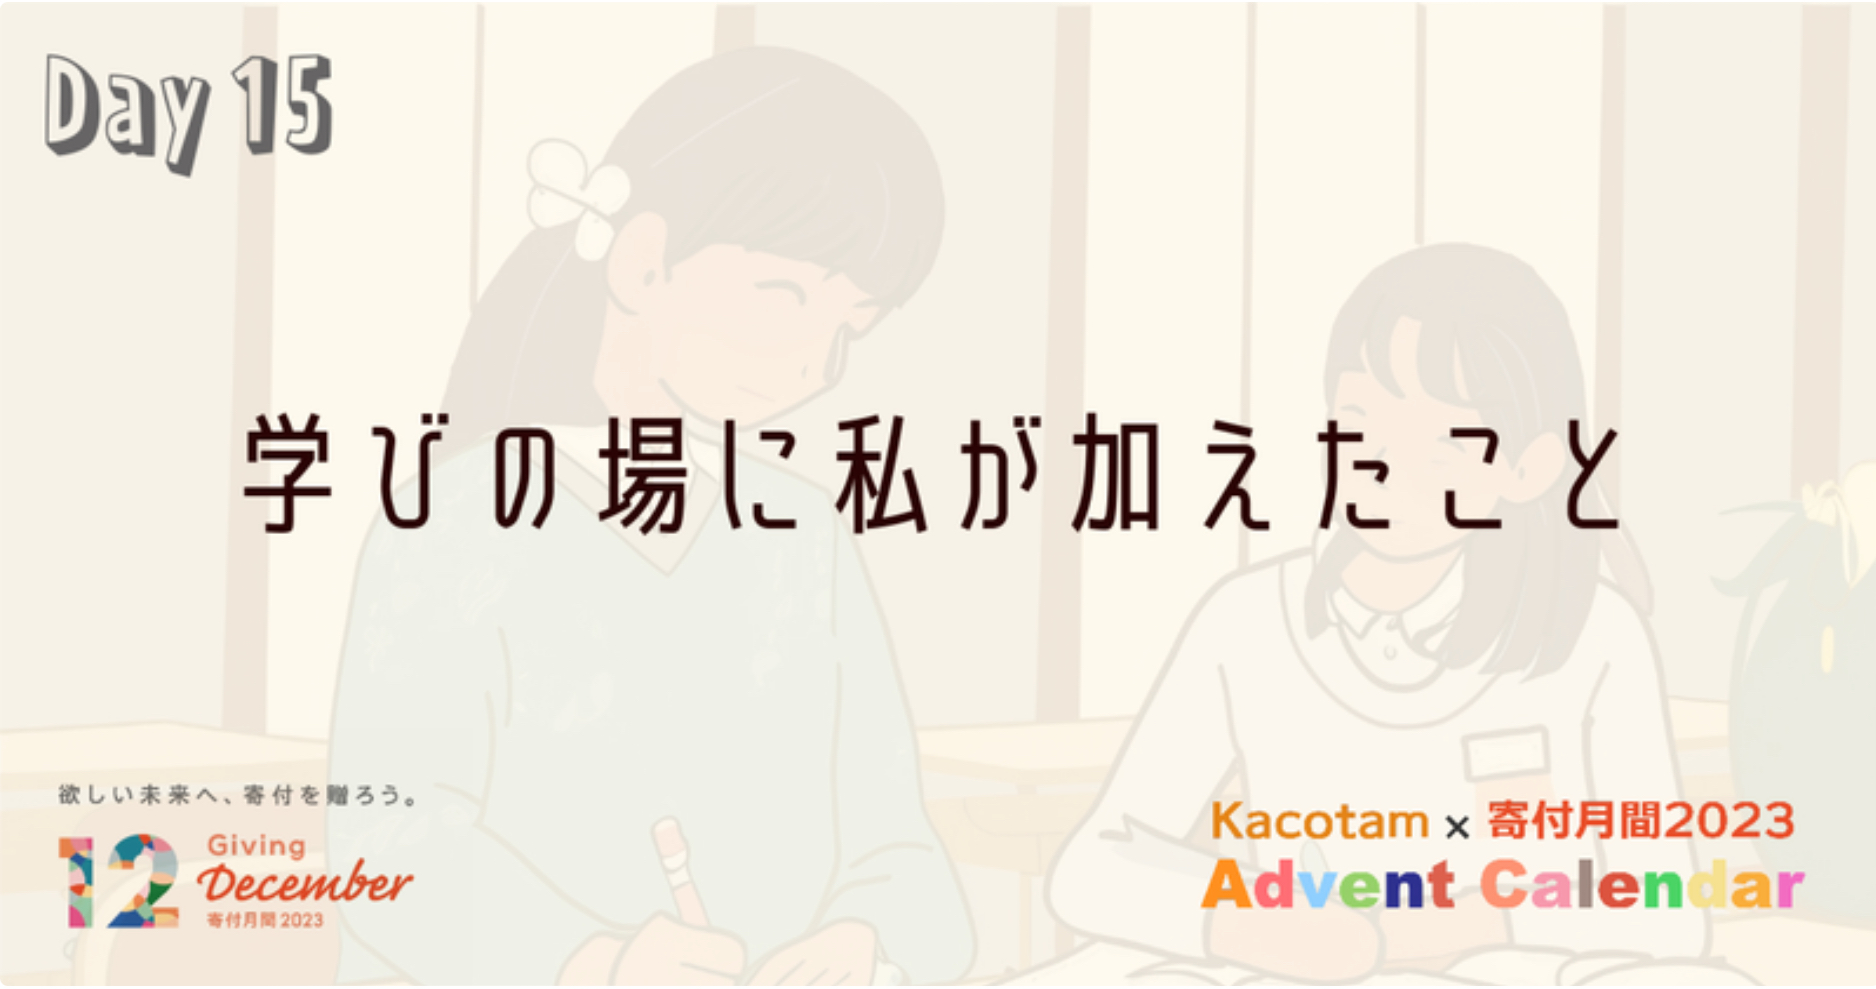 【15日目】「Kacotam x 寄付月間2023 アドベントカレンダー」の記事を公開しました